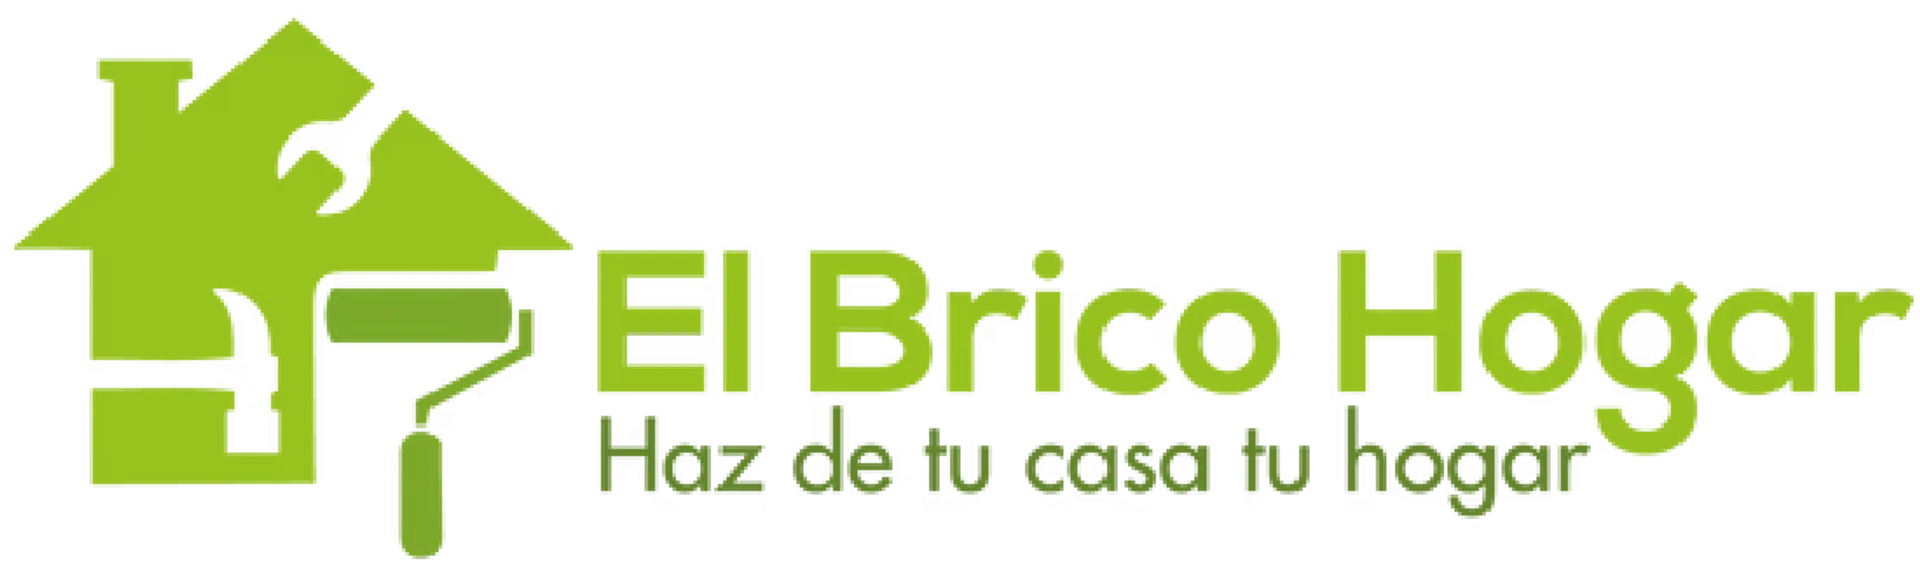 BRICOHOGAR logo